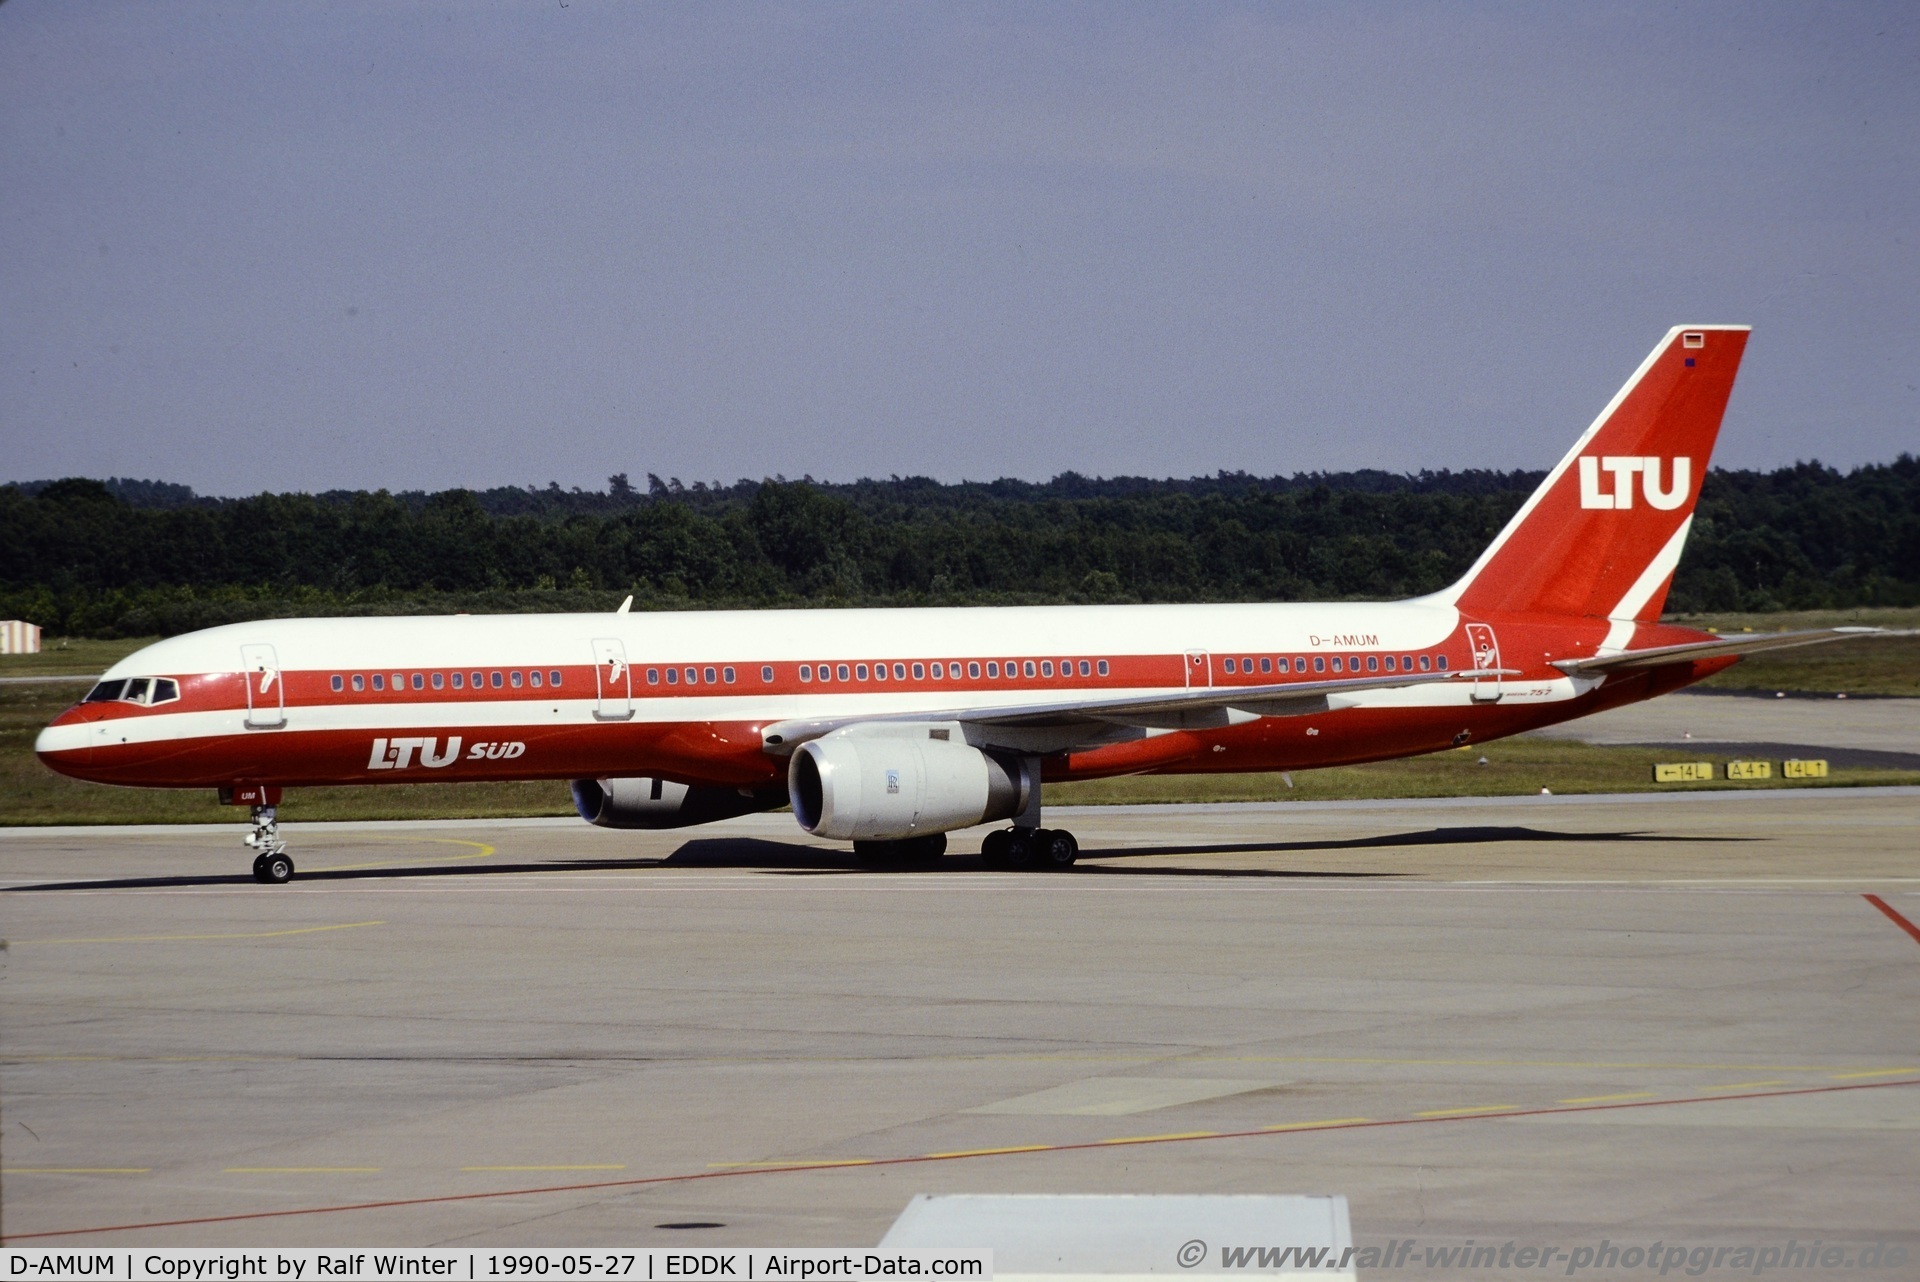 D-AMUM, 1989 Boeing 757-2G5 C/N 24451, Boeing 757-2G5 - LT LTU Süd International Airways - 24451 - D-AMUM - 27.05.1990 - CGN